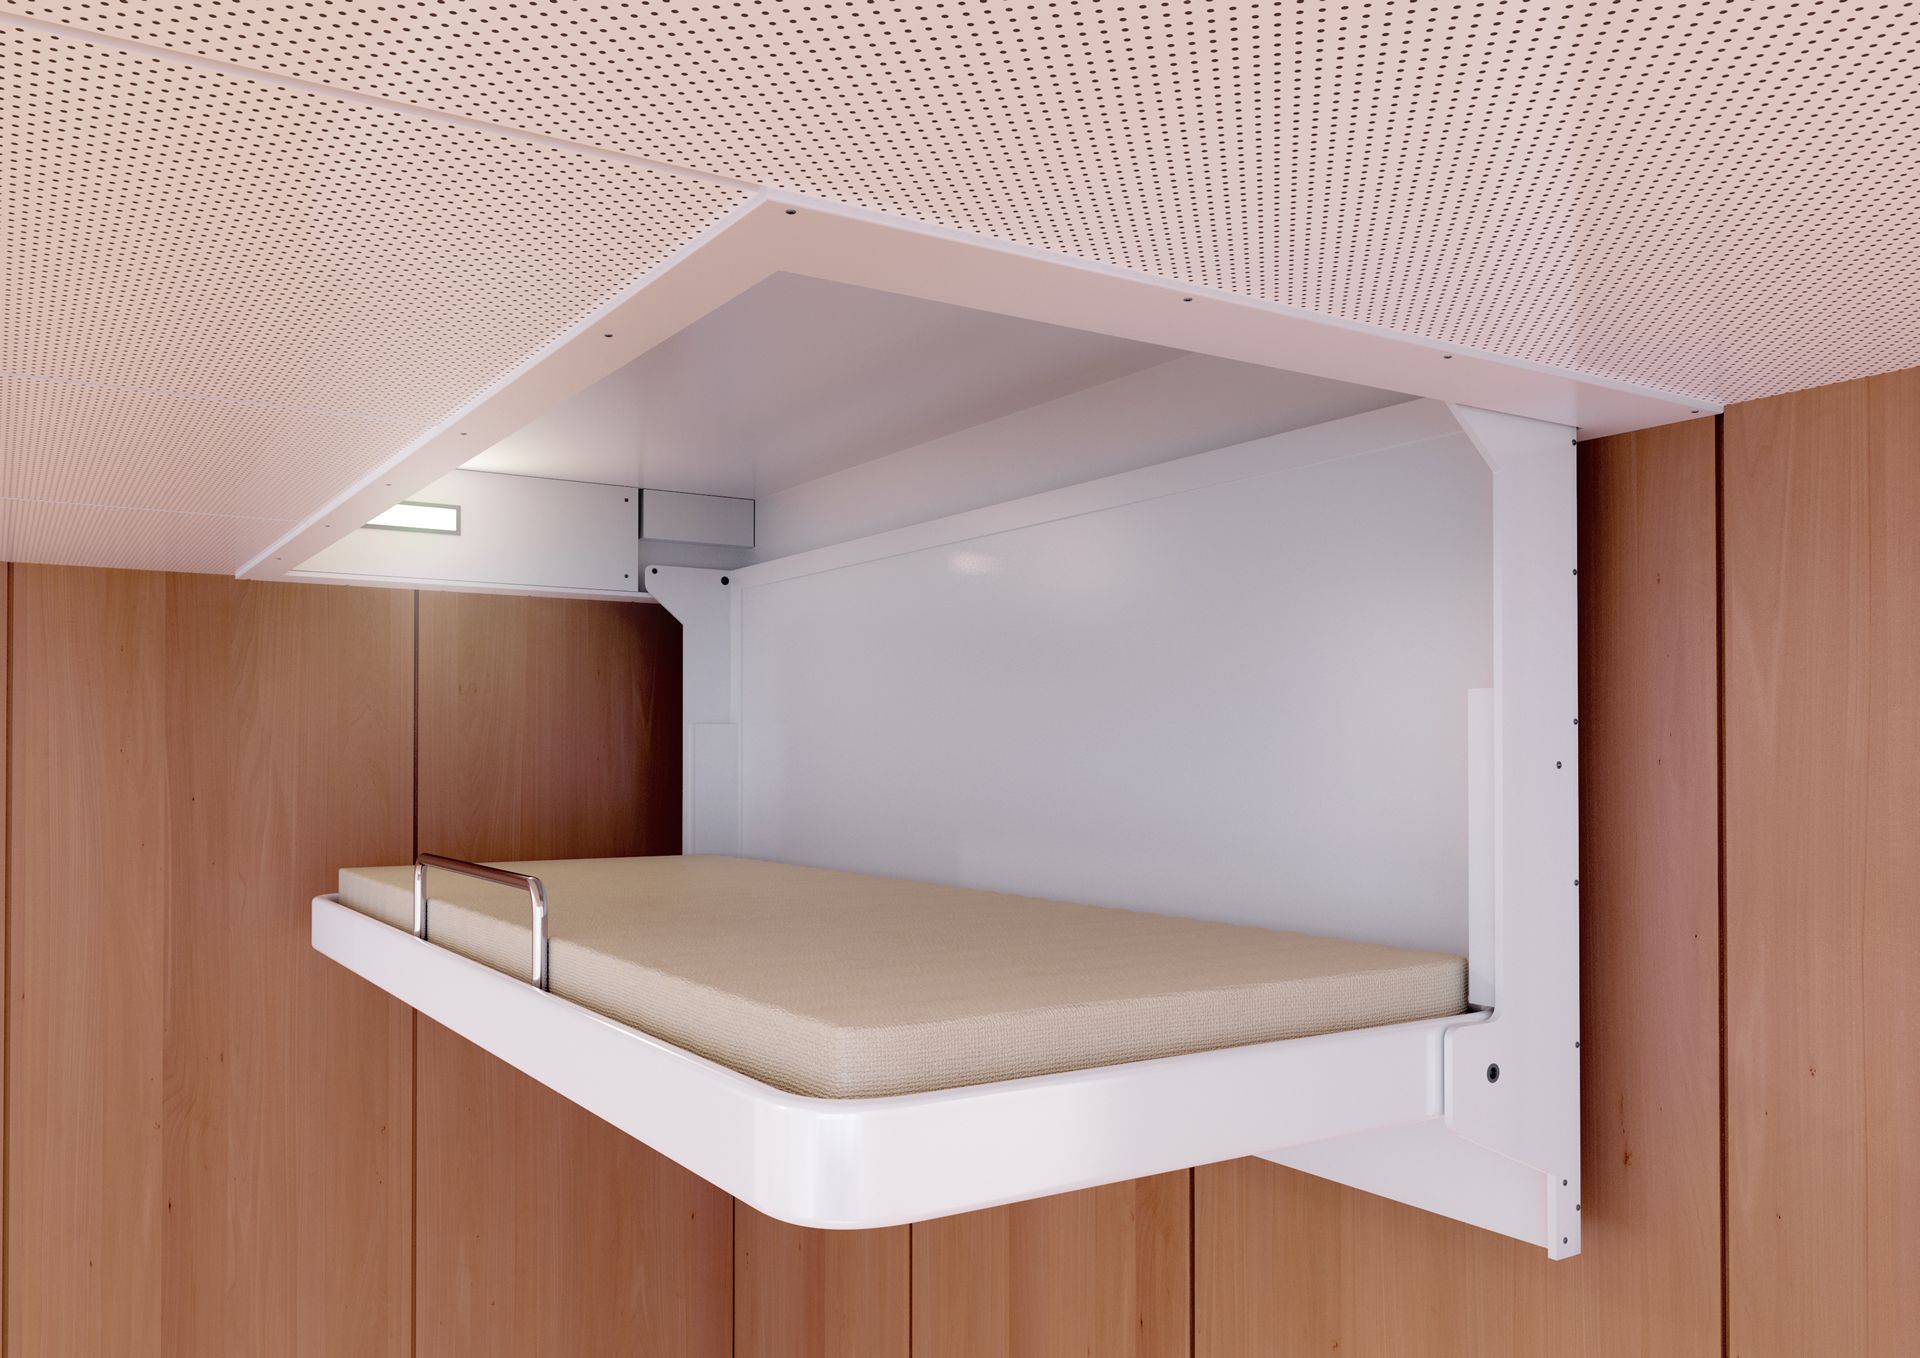 механизм подъема кровати под потолок